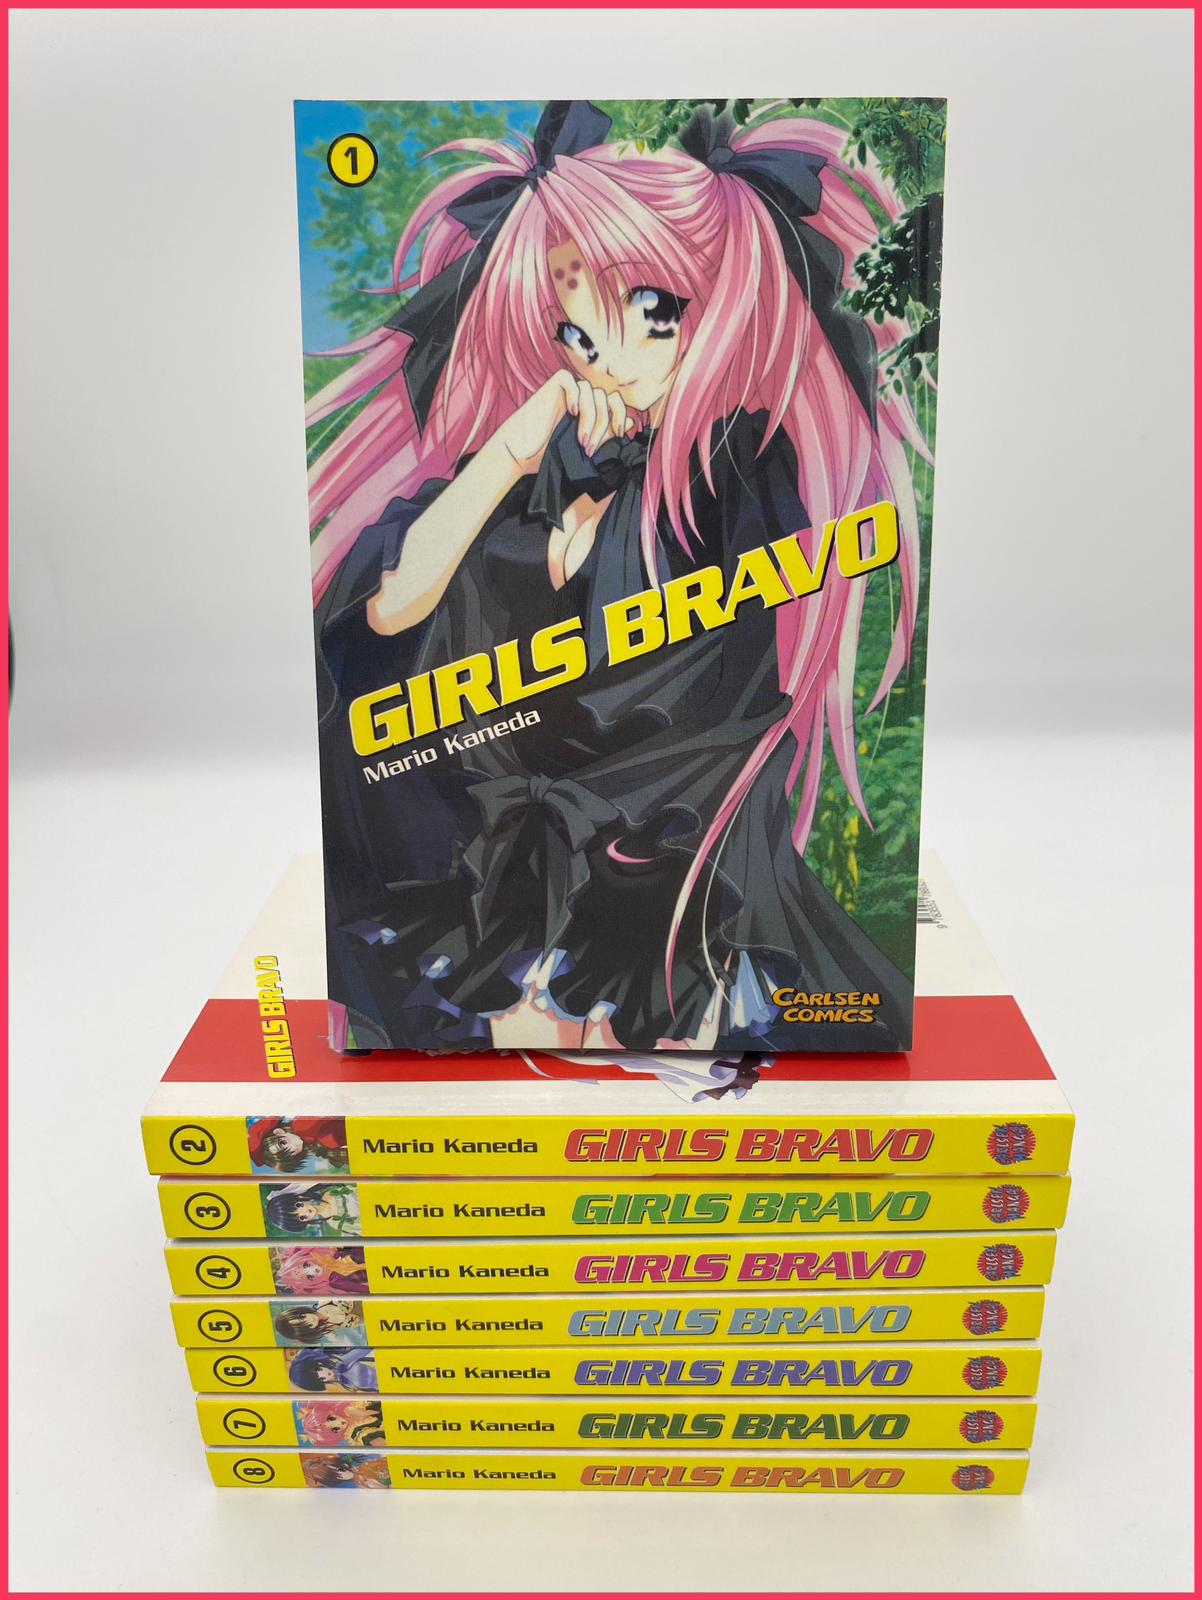 Girls Bravo 1-8 Manga 2nd Hand kaufen bei Mangaburg